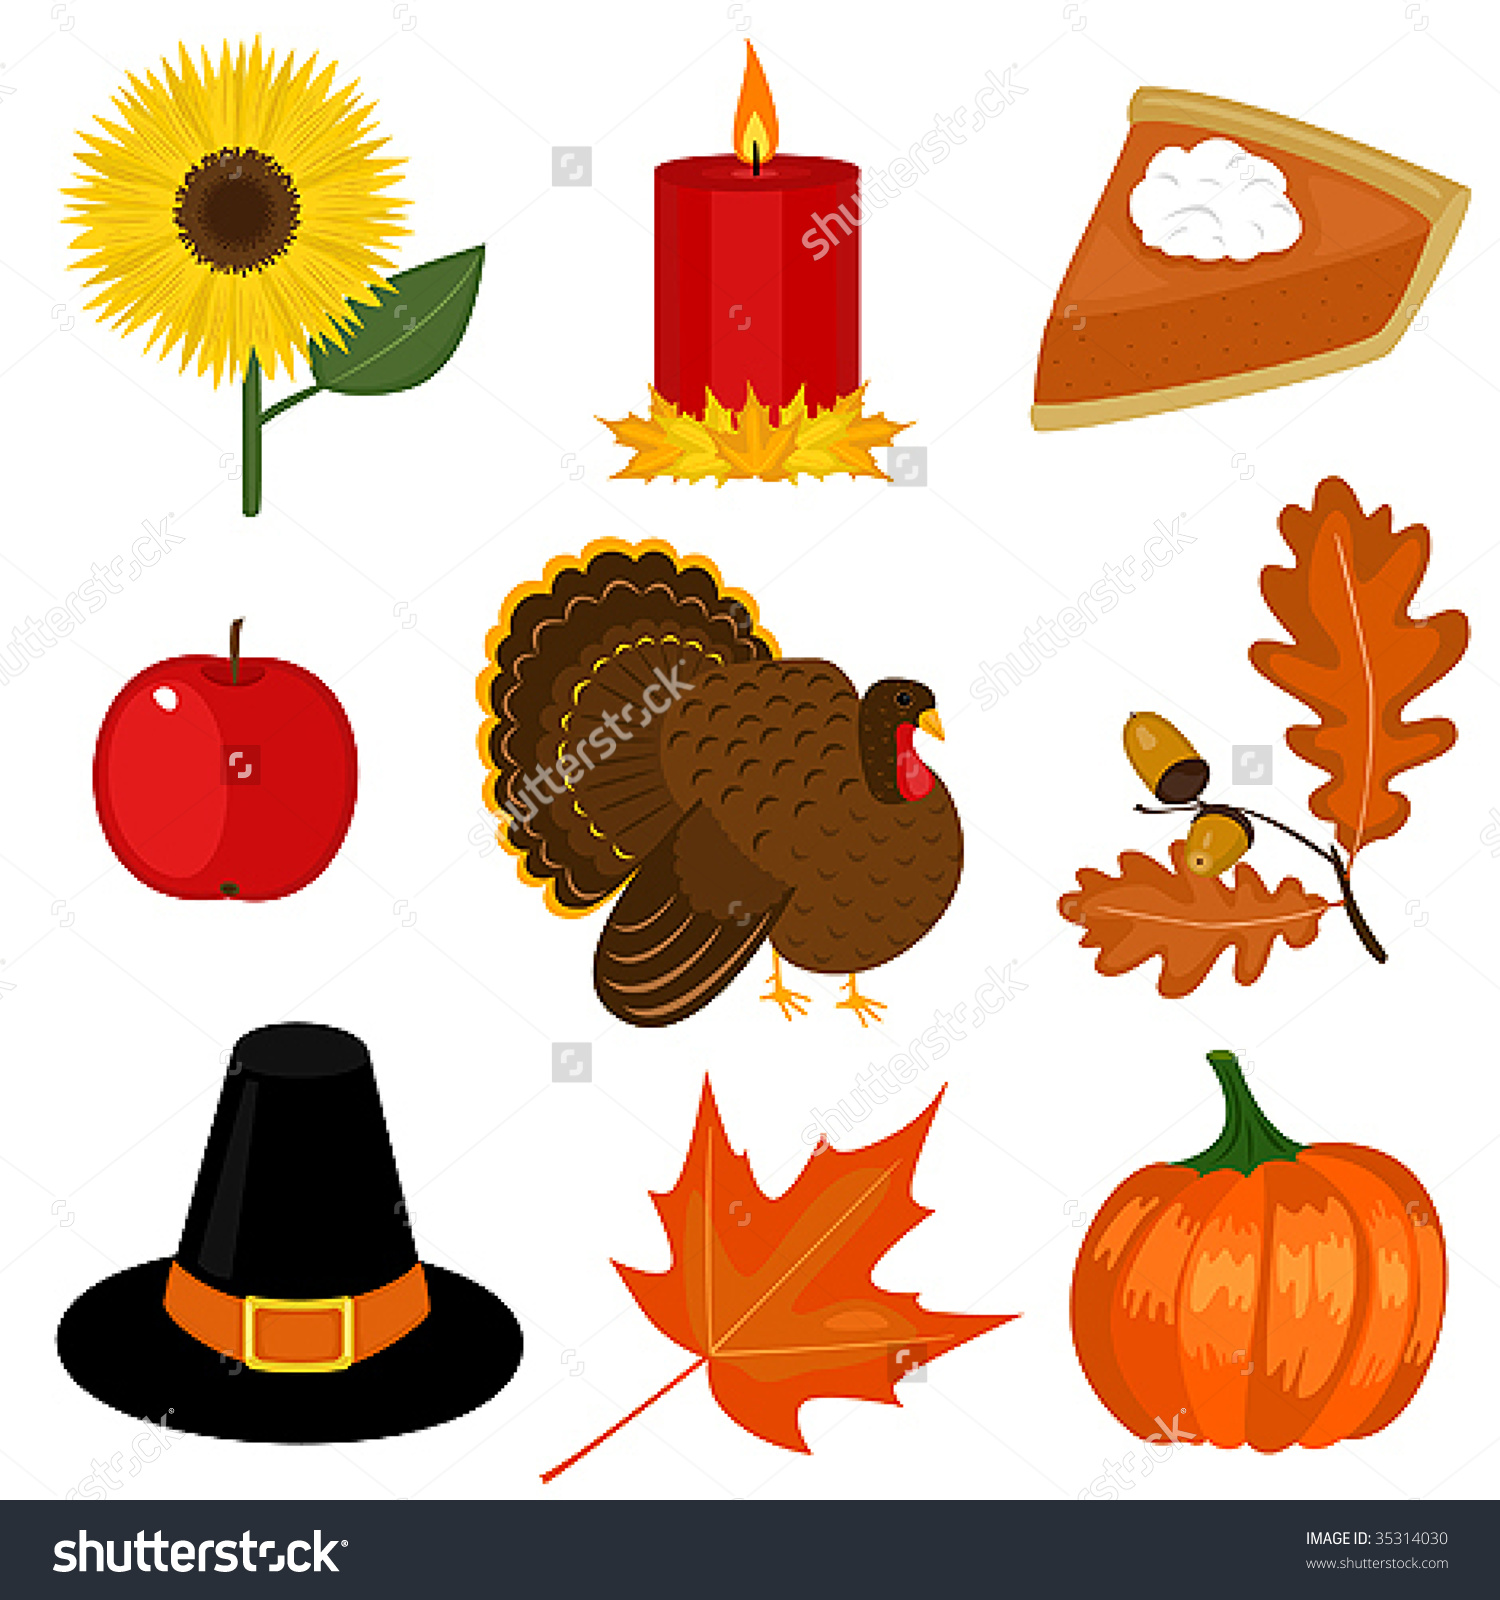 Thanksgiving Day Clip-Art Stock Vector Illustration 35314030 : Shutterstock